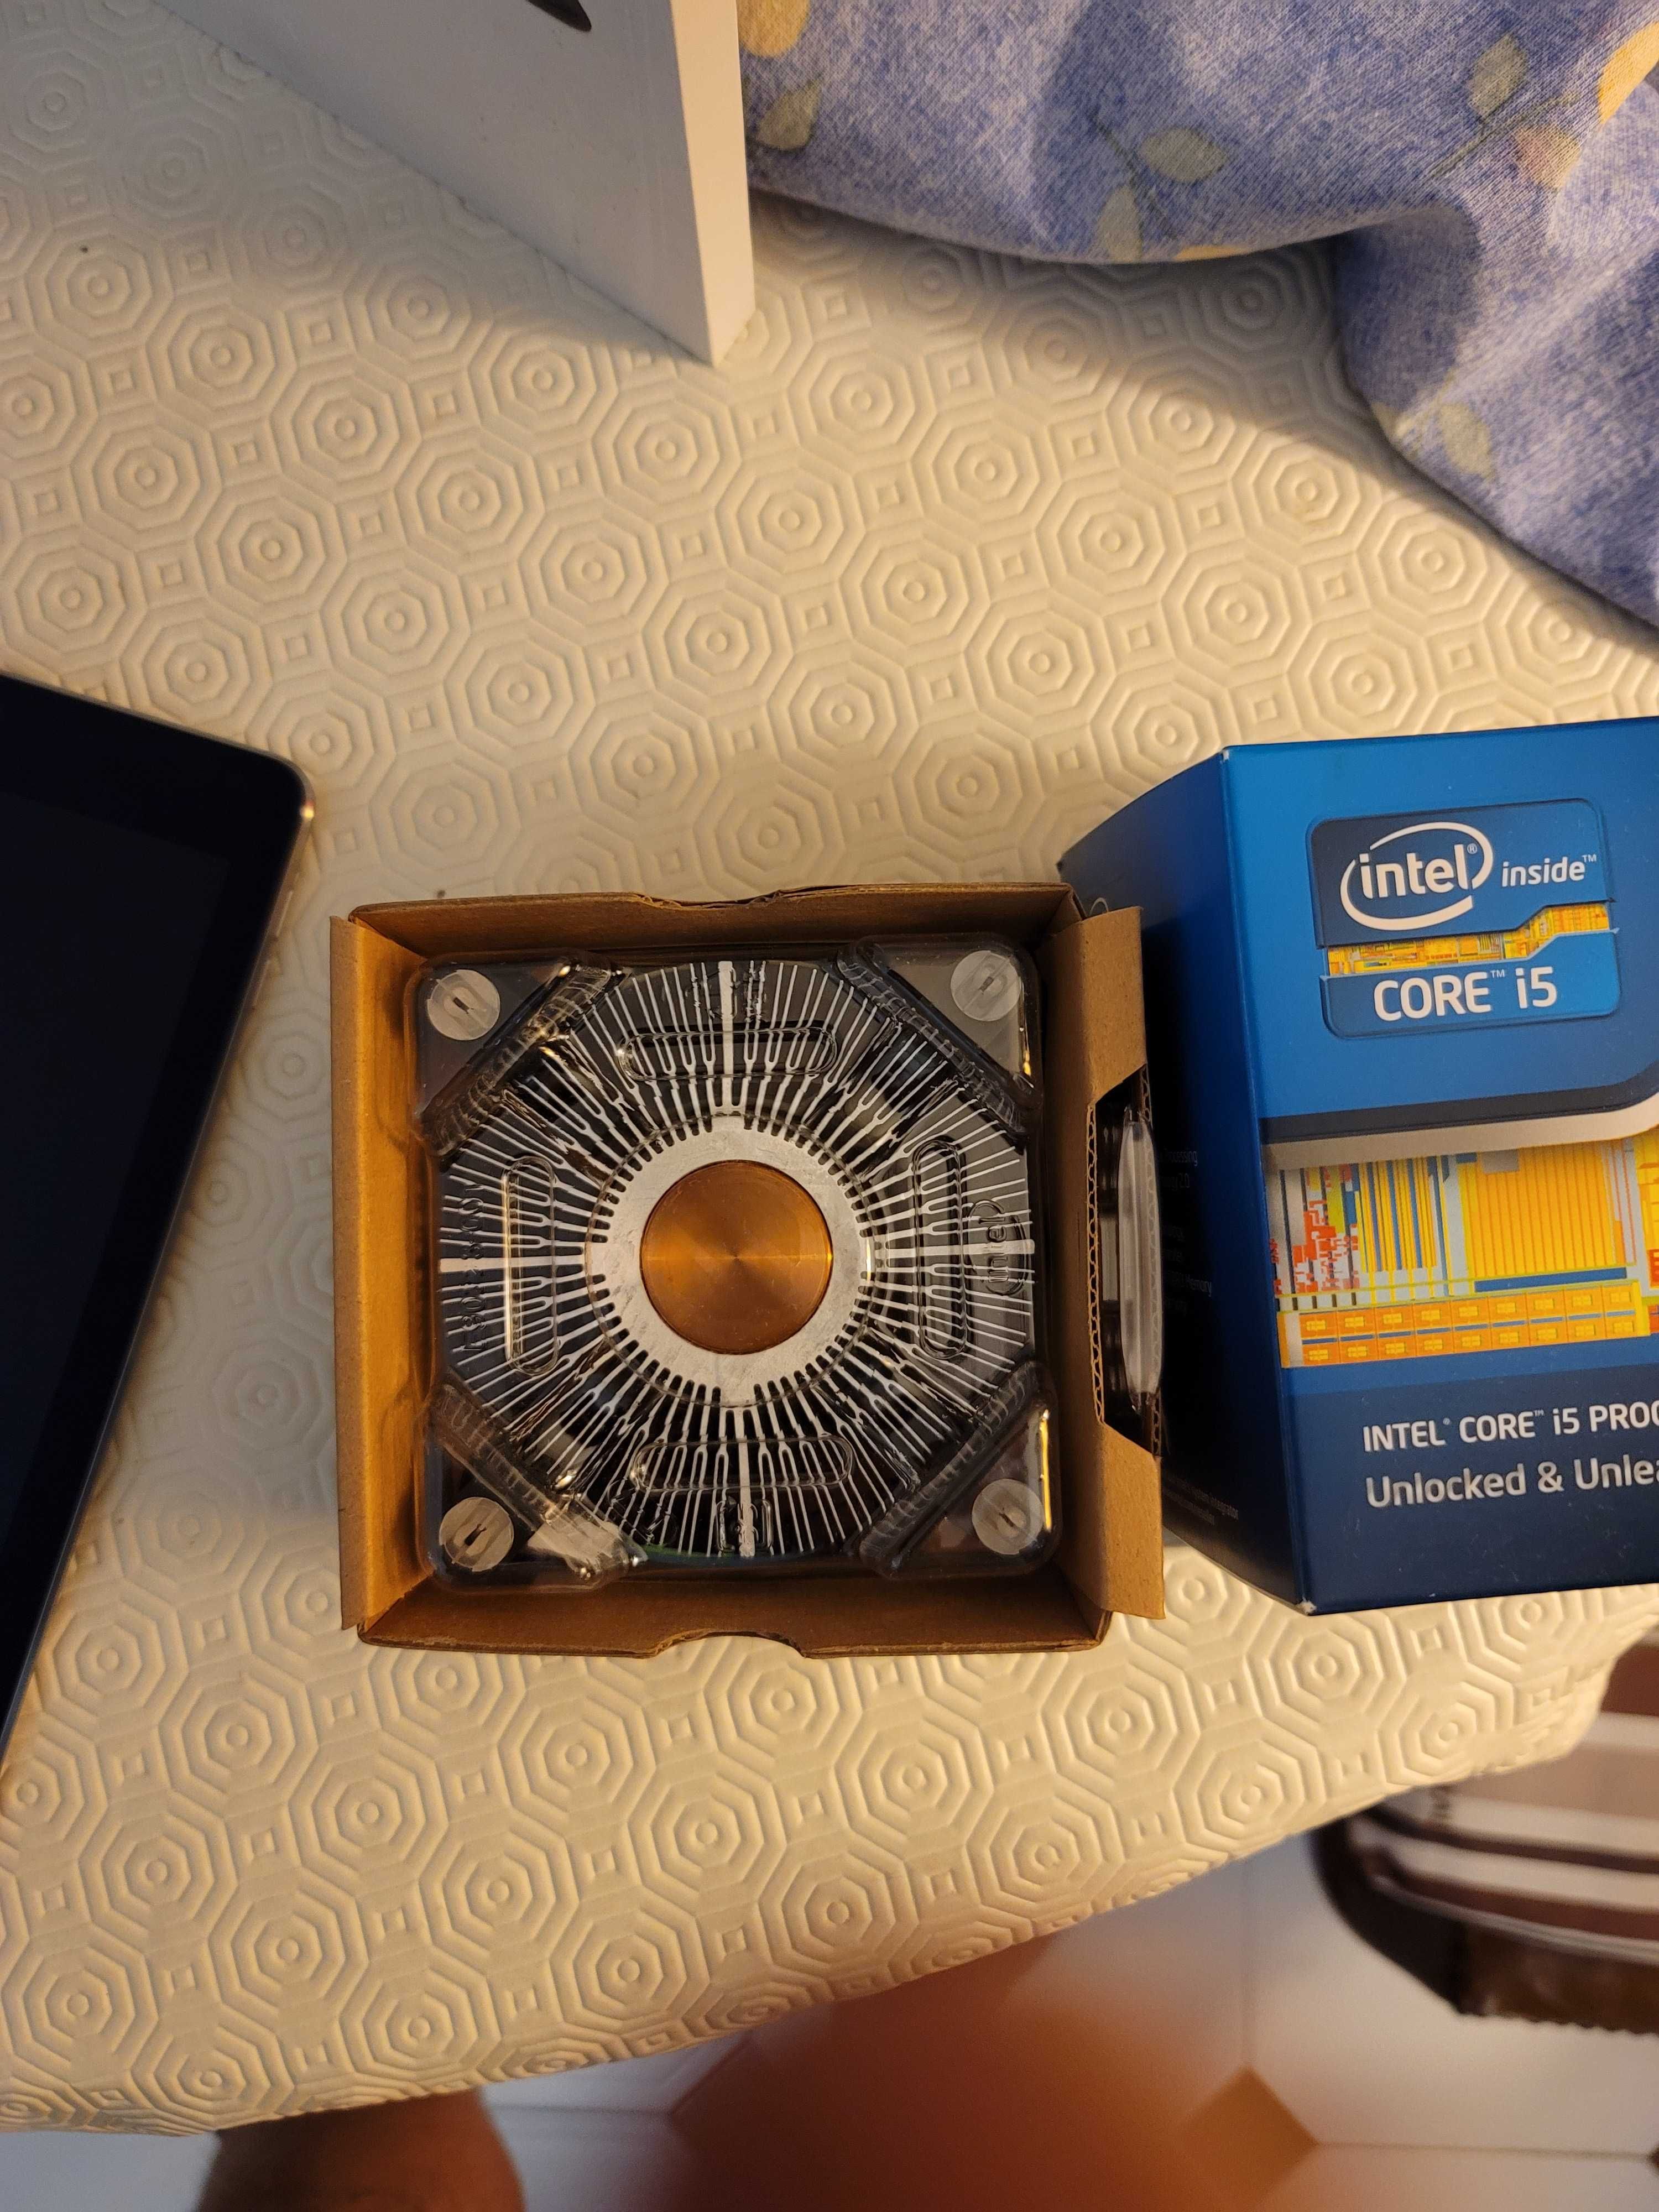 Intel i5-2500K SR008 3.38 Ghz